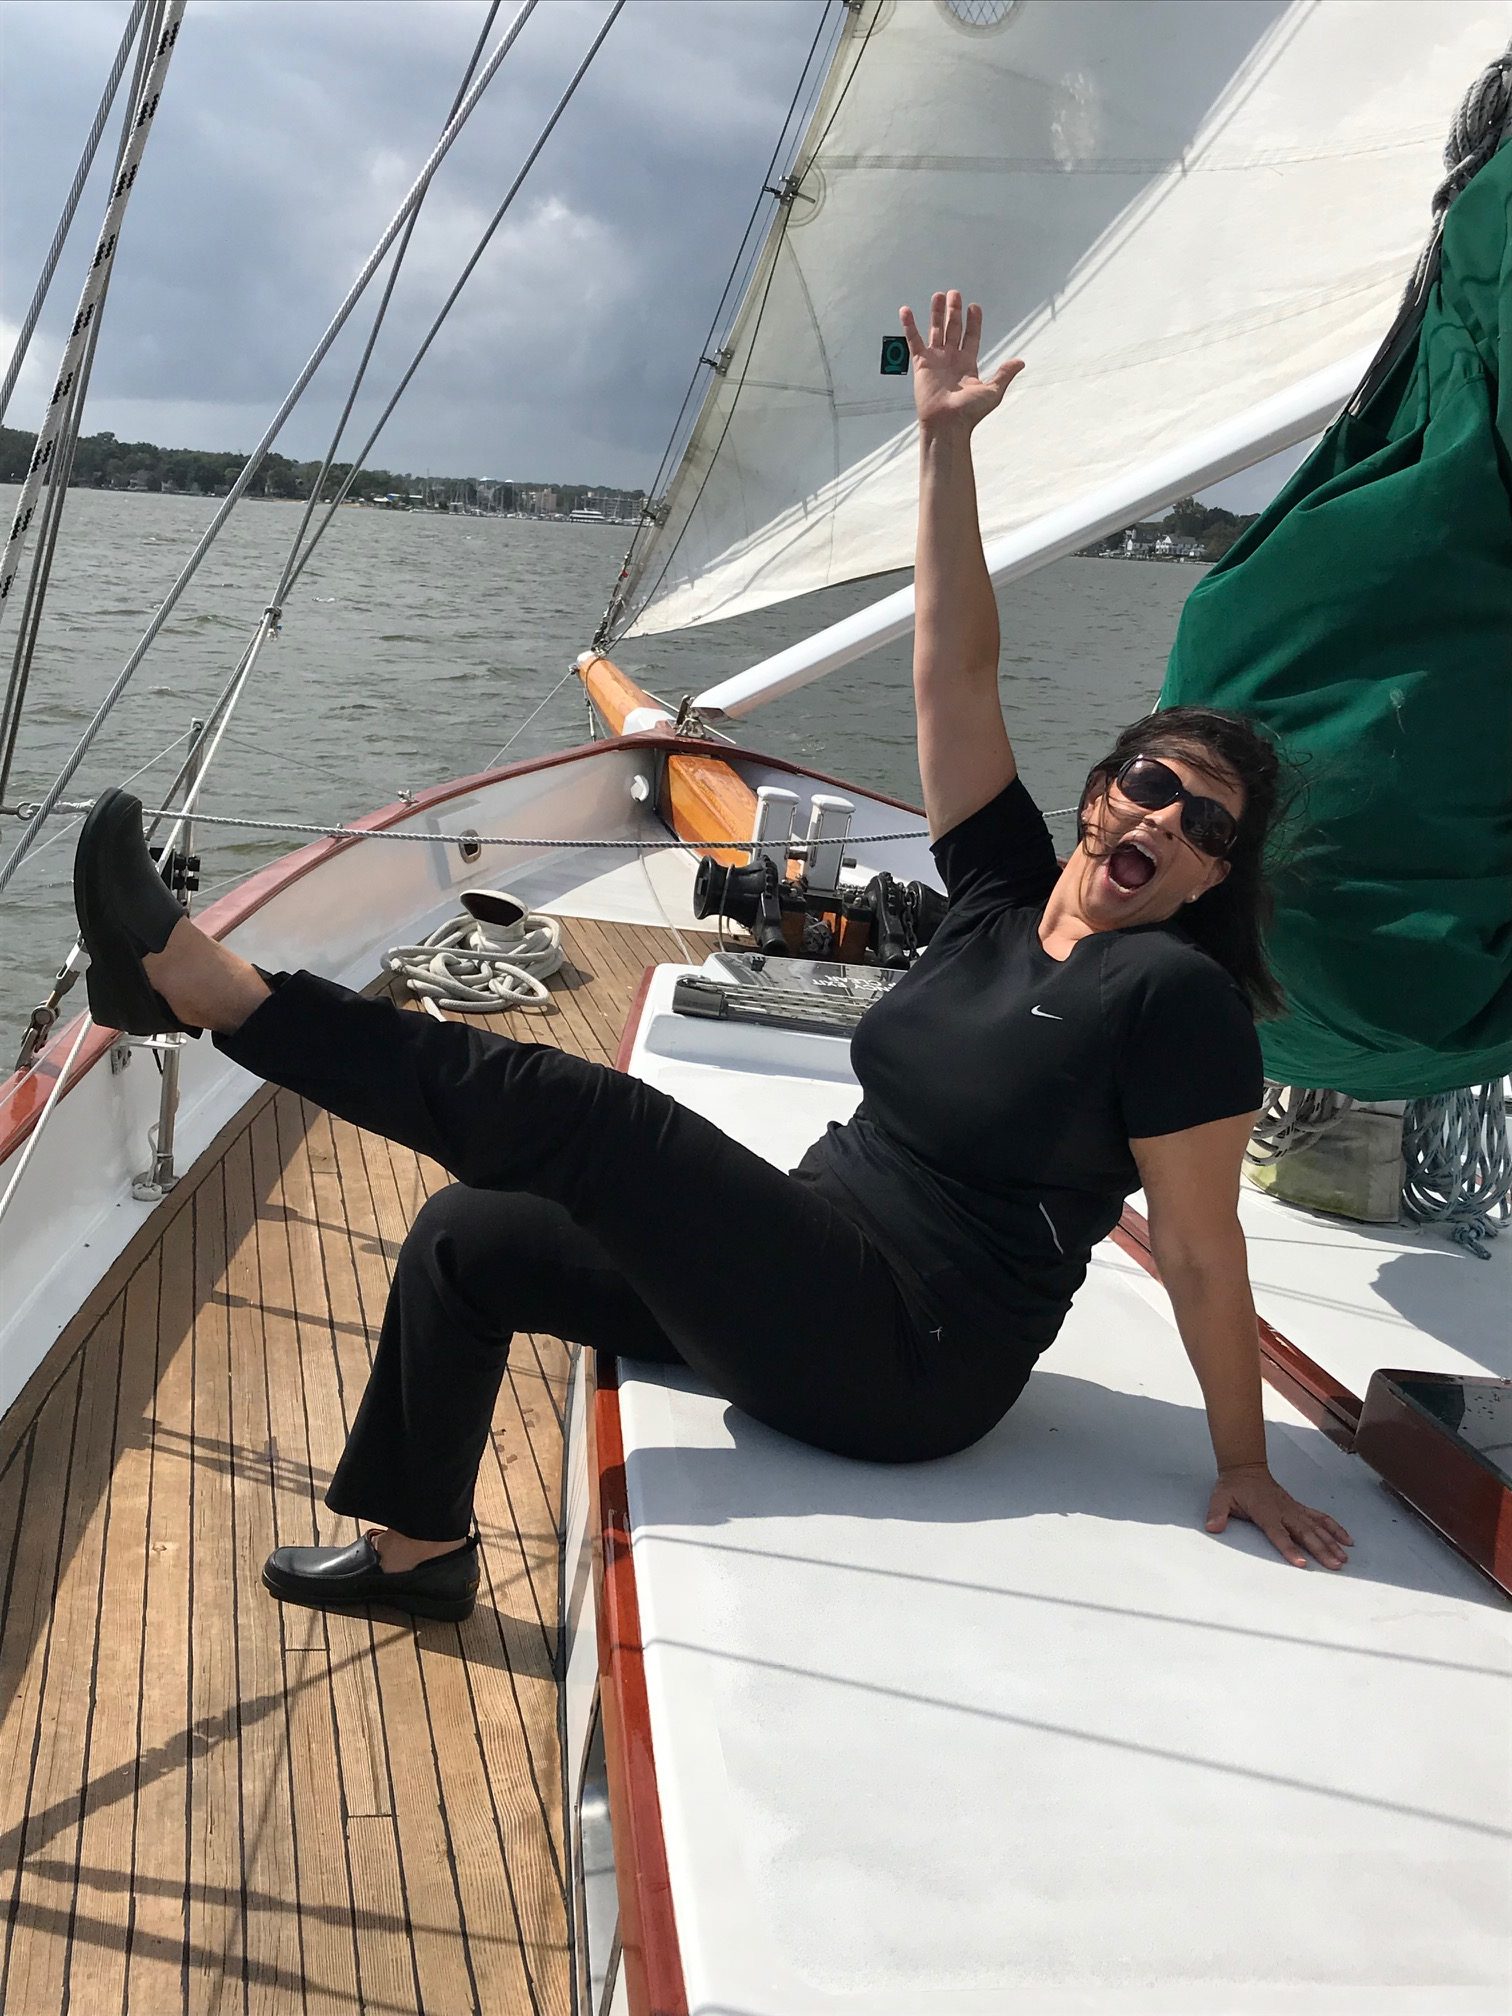 Schooner guest showing joy in sailing